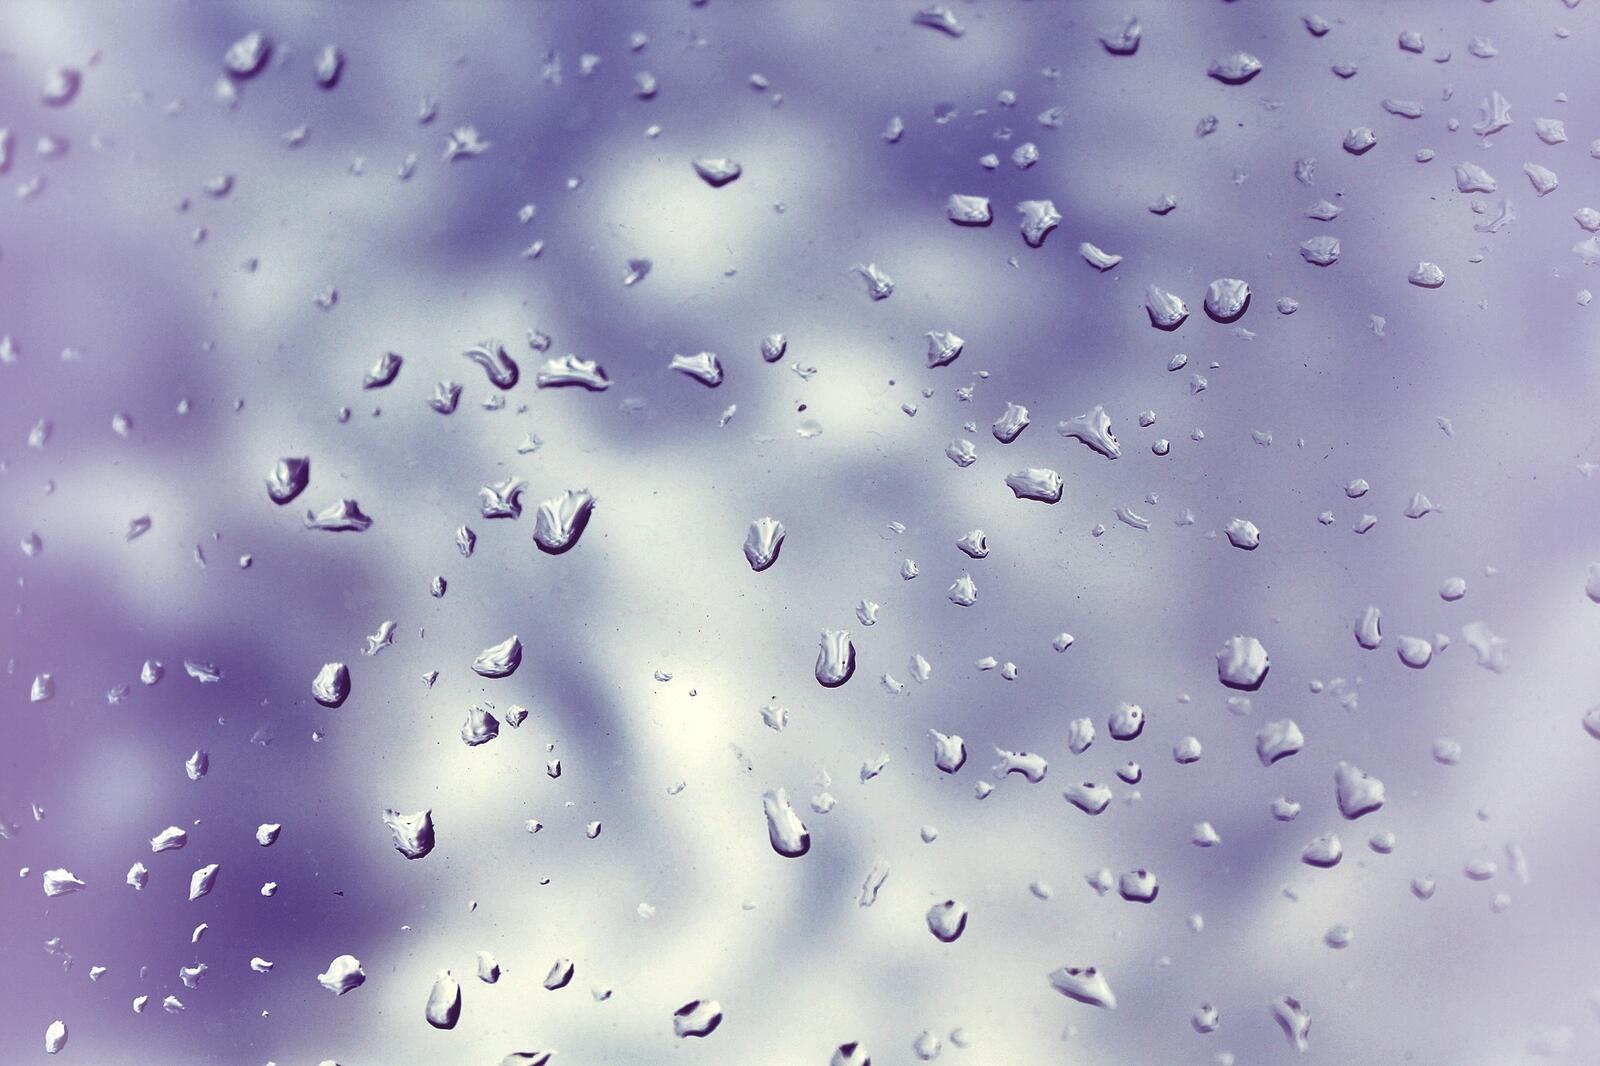 Капельки воды после дождя на стекле